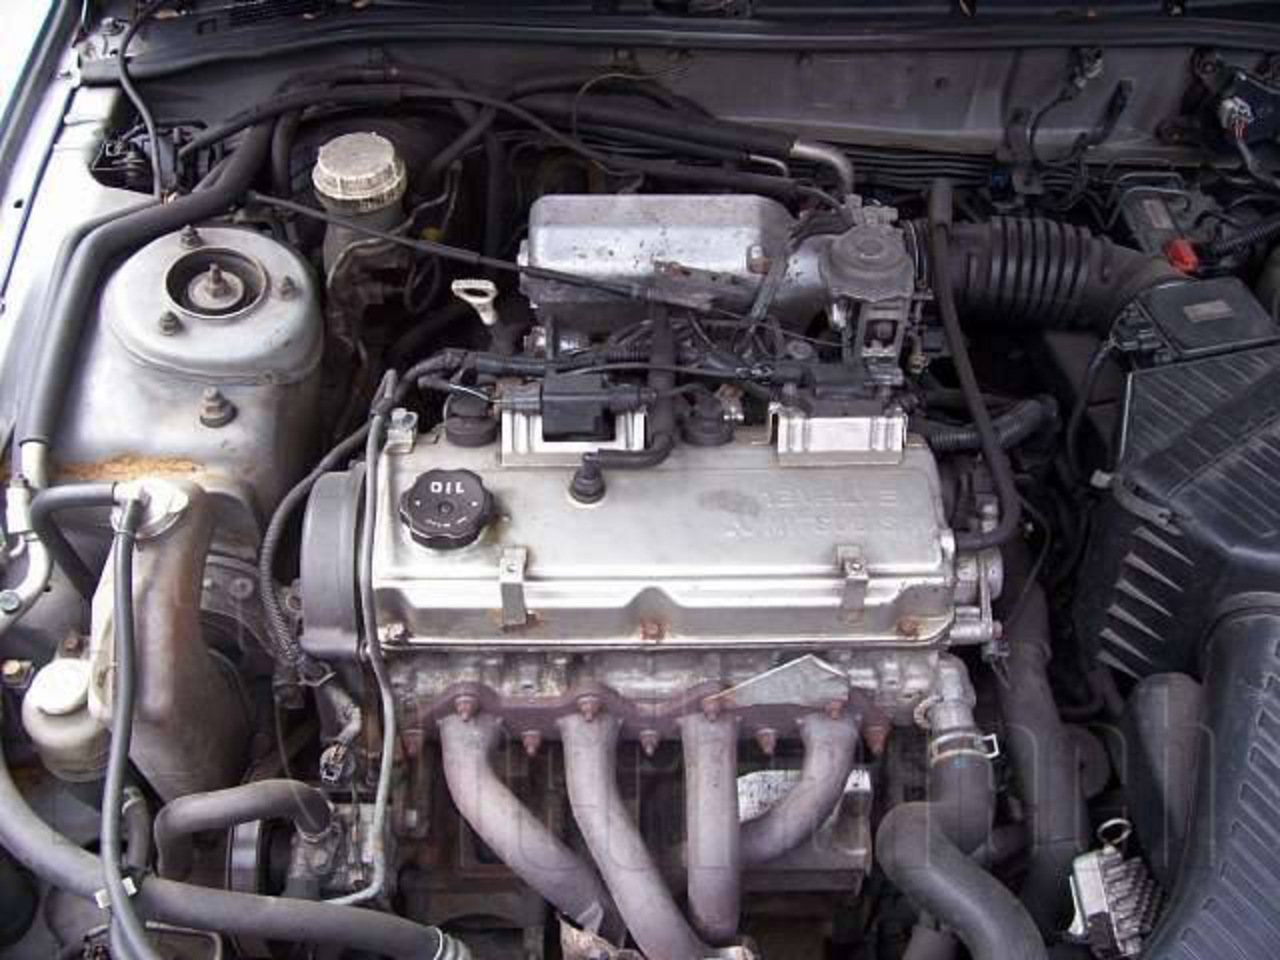 Мицубиси каризма двигатели. Мотор Mitsubishi Galant g 4 63. Двигатель 4g63 Mitsubishi Galant. Мотор 2.4 Митсубиси Галант. Митсубиси Галант 8 2.4 мотор.